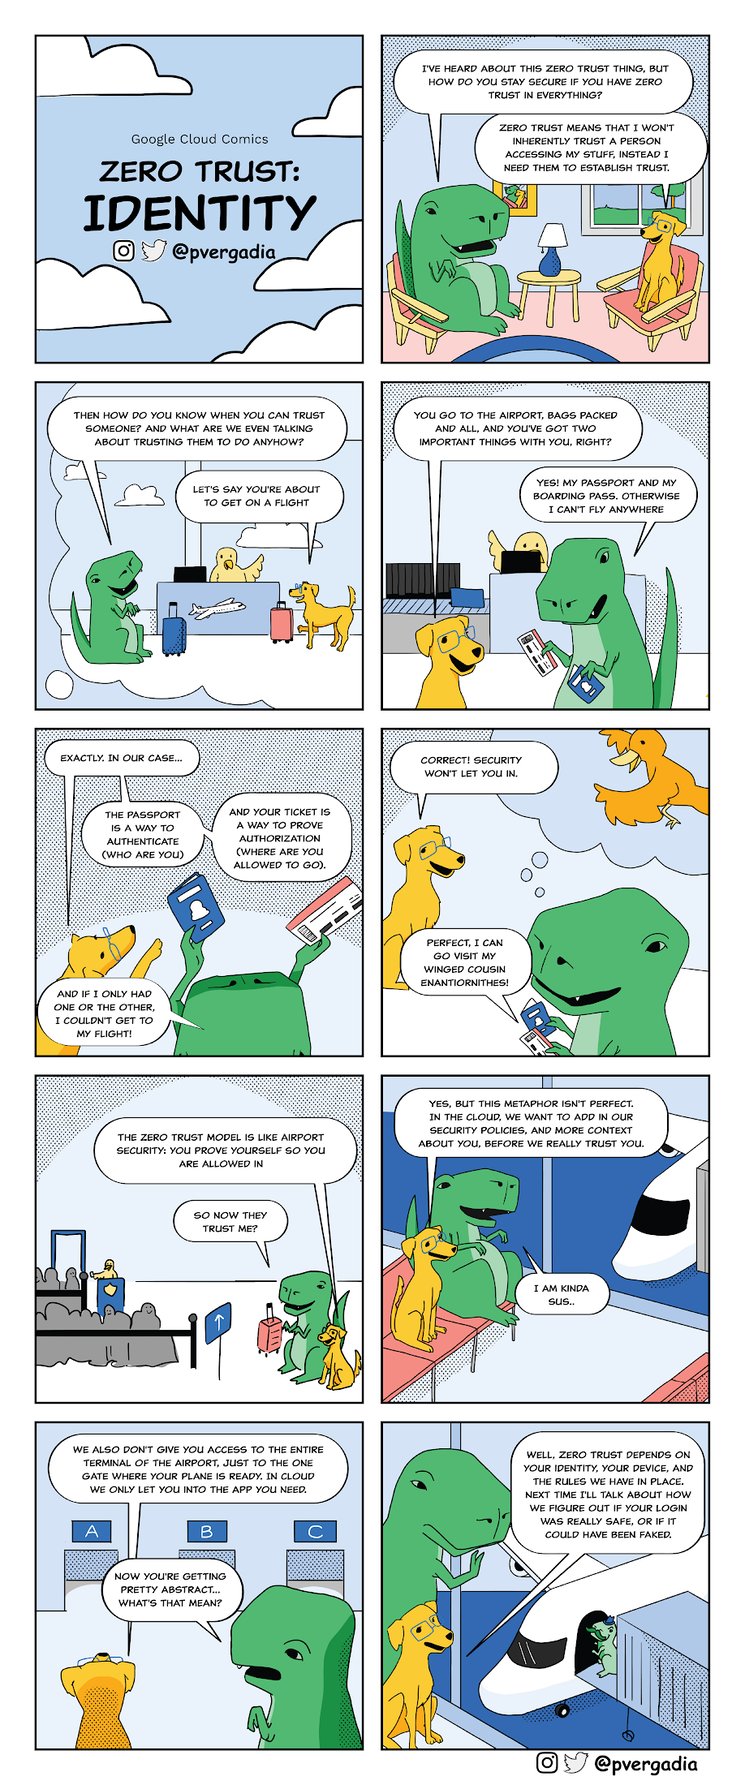 Google-Cloud-Comic-issue5-Full-Comic_full-.max-2200x2200